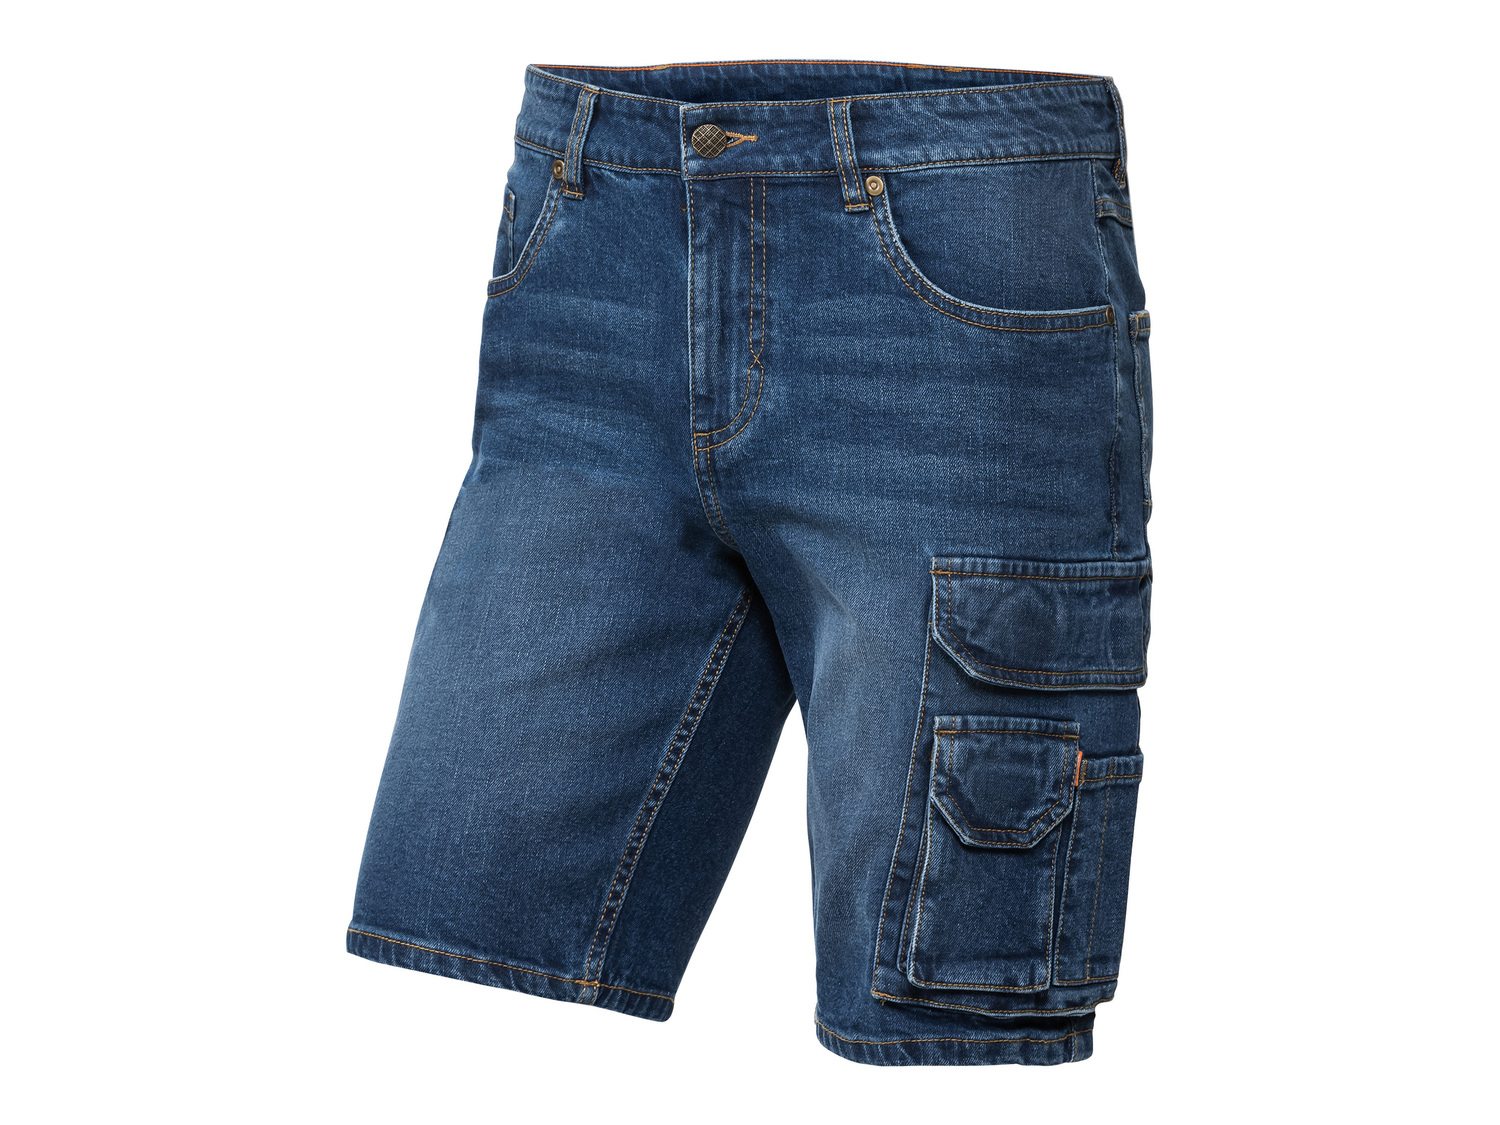 Shorts in jeans da uomo DMAX Dmax, prezzo 11.99 € 
Misure: 46-54
Taglie disponibili

Caratteristiche

- ...